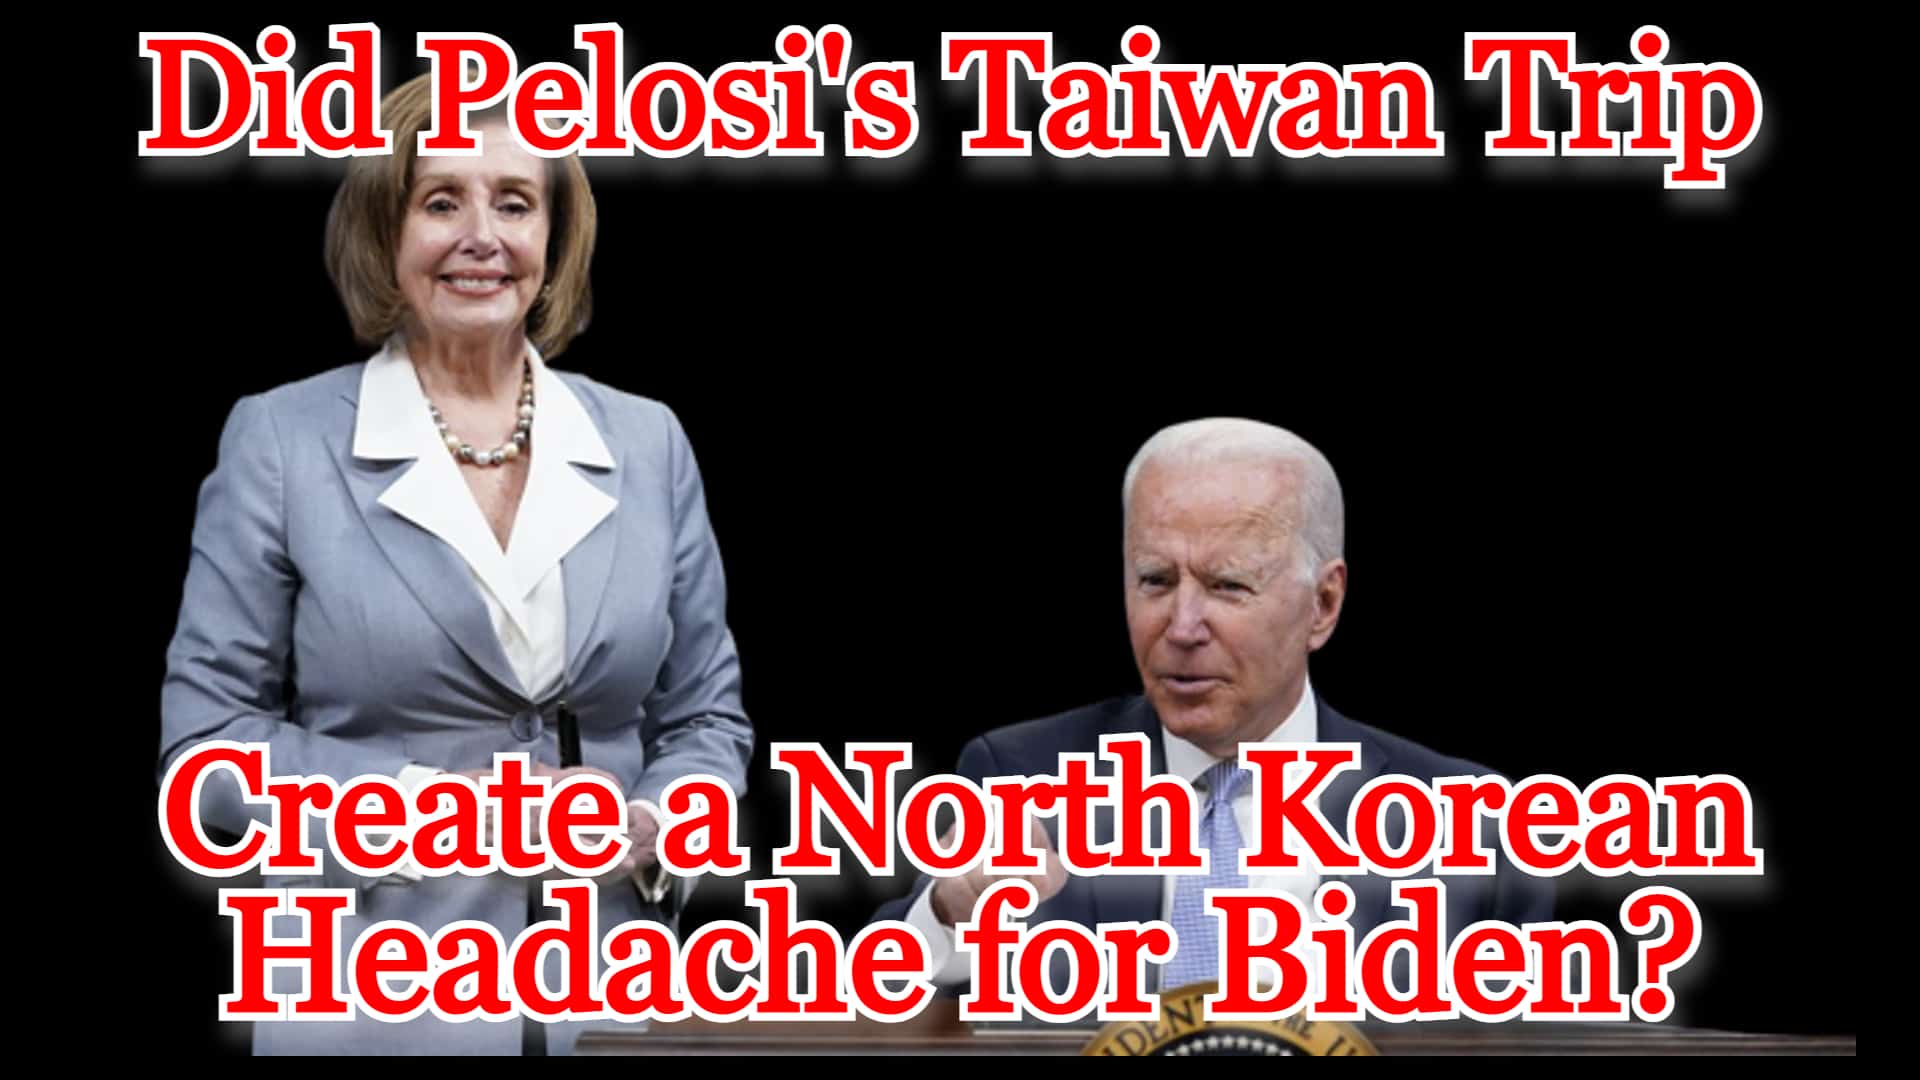 COI #313: Did Pelosi’s Taiwan Trip Create a North Korean Headache for Biden?